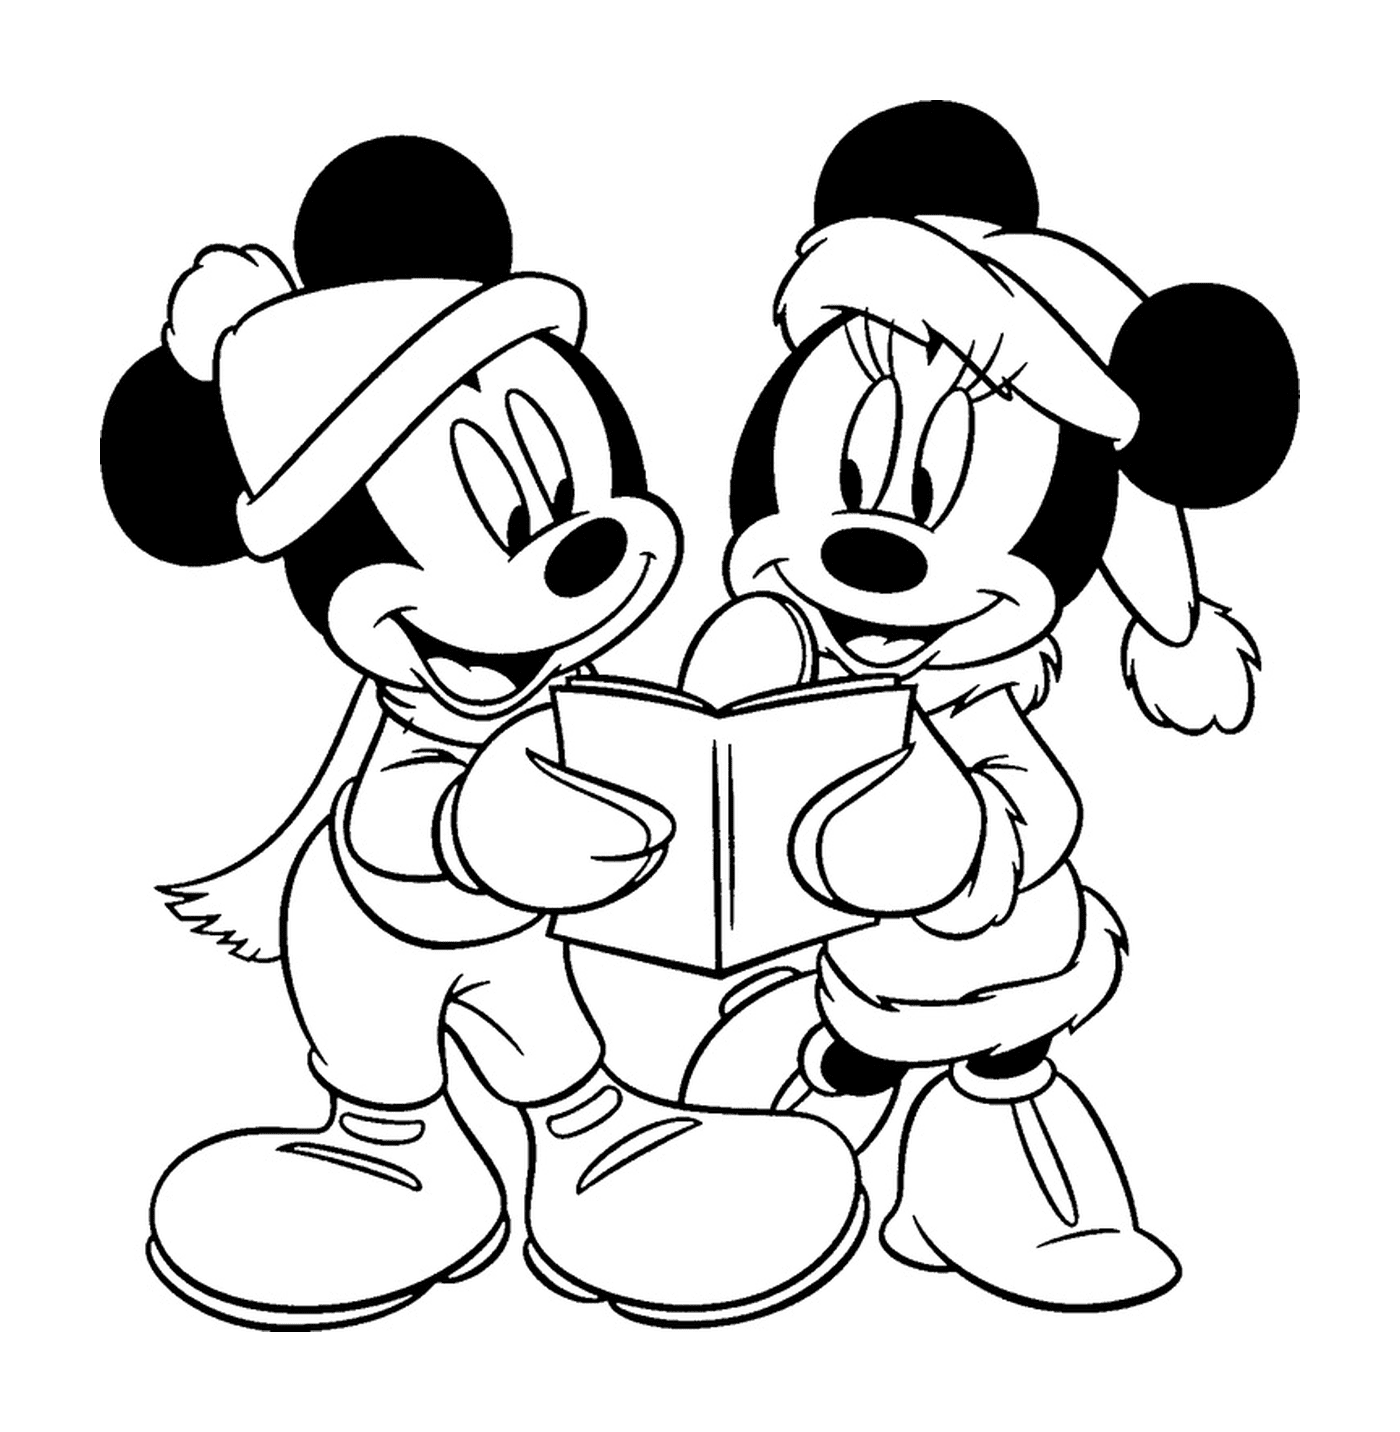  Mickey e Minnie ler livros 